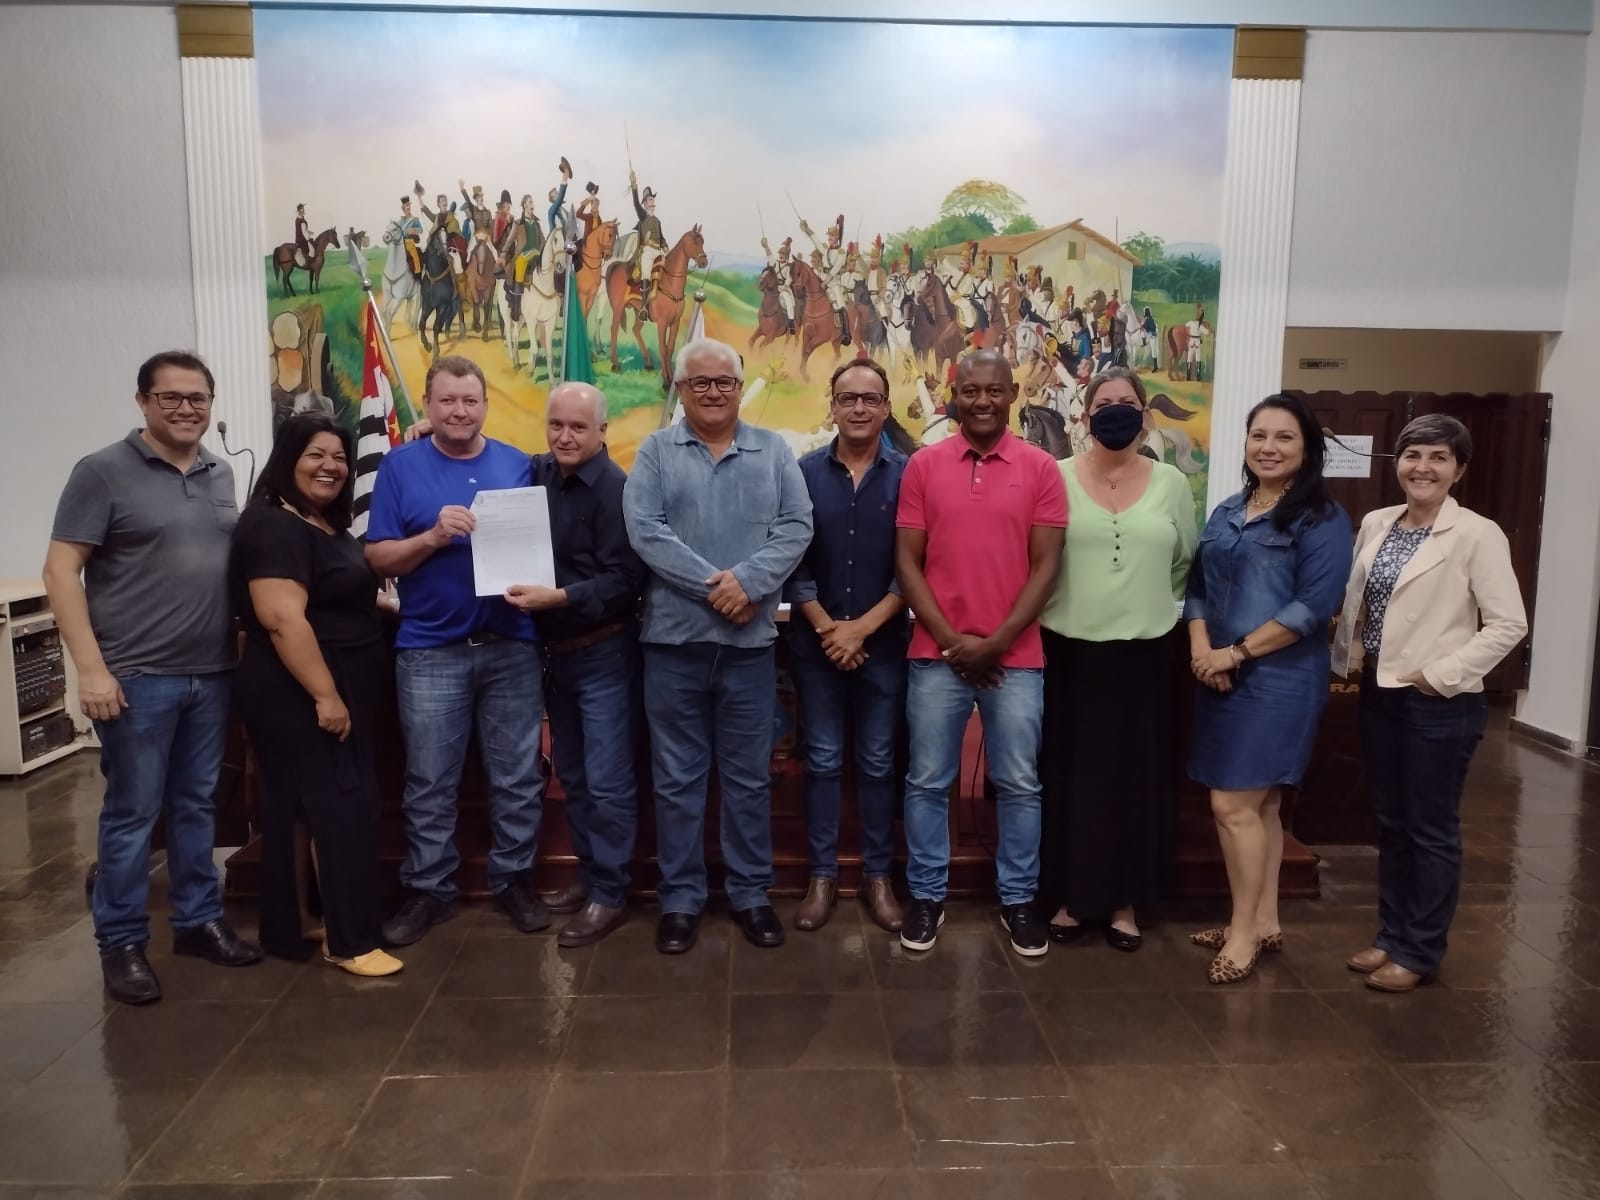 Câmara Municipal de Urânia aprova concessão de cidadão honorário a Fausto Pinato